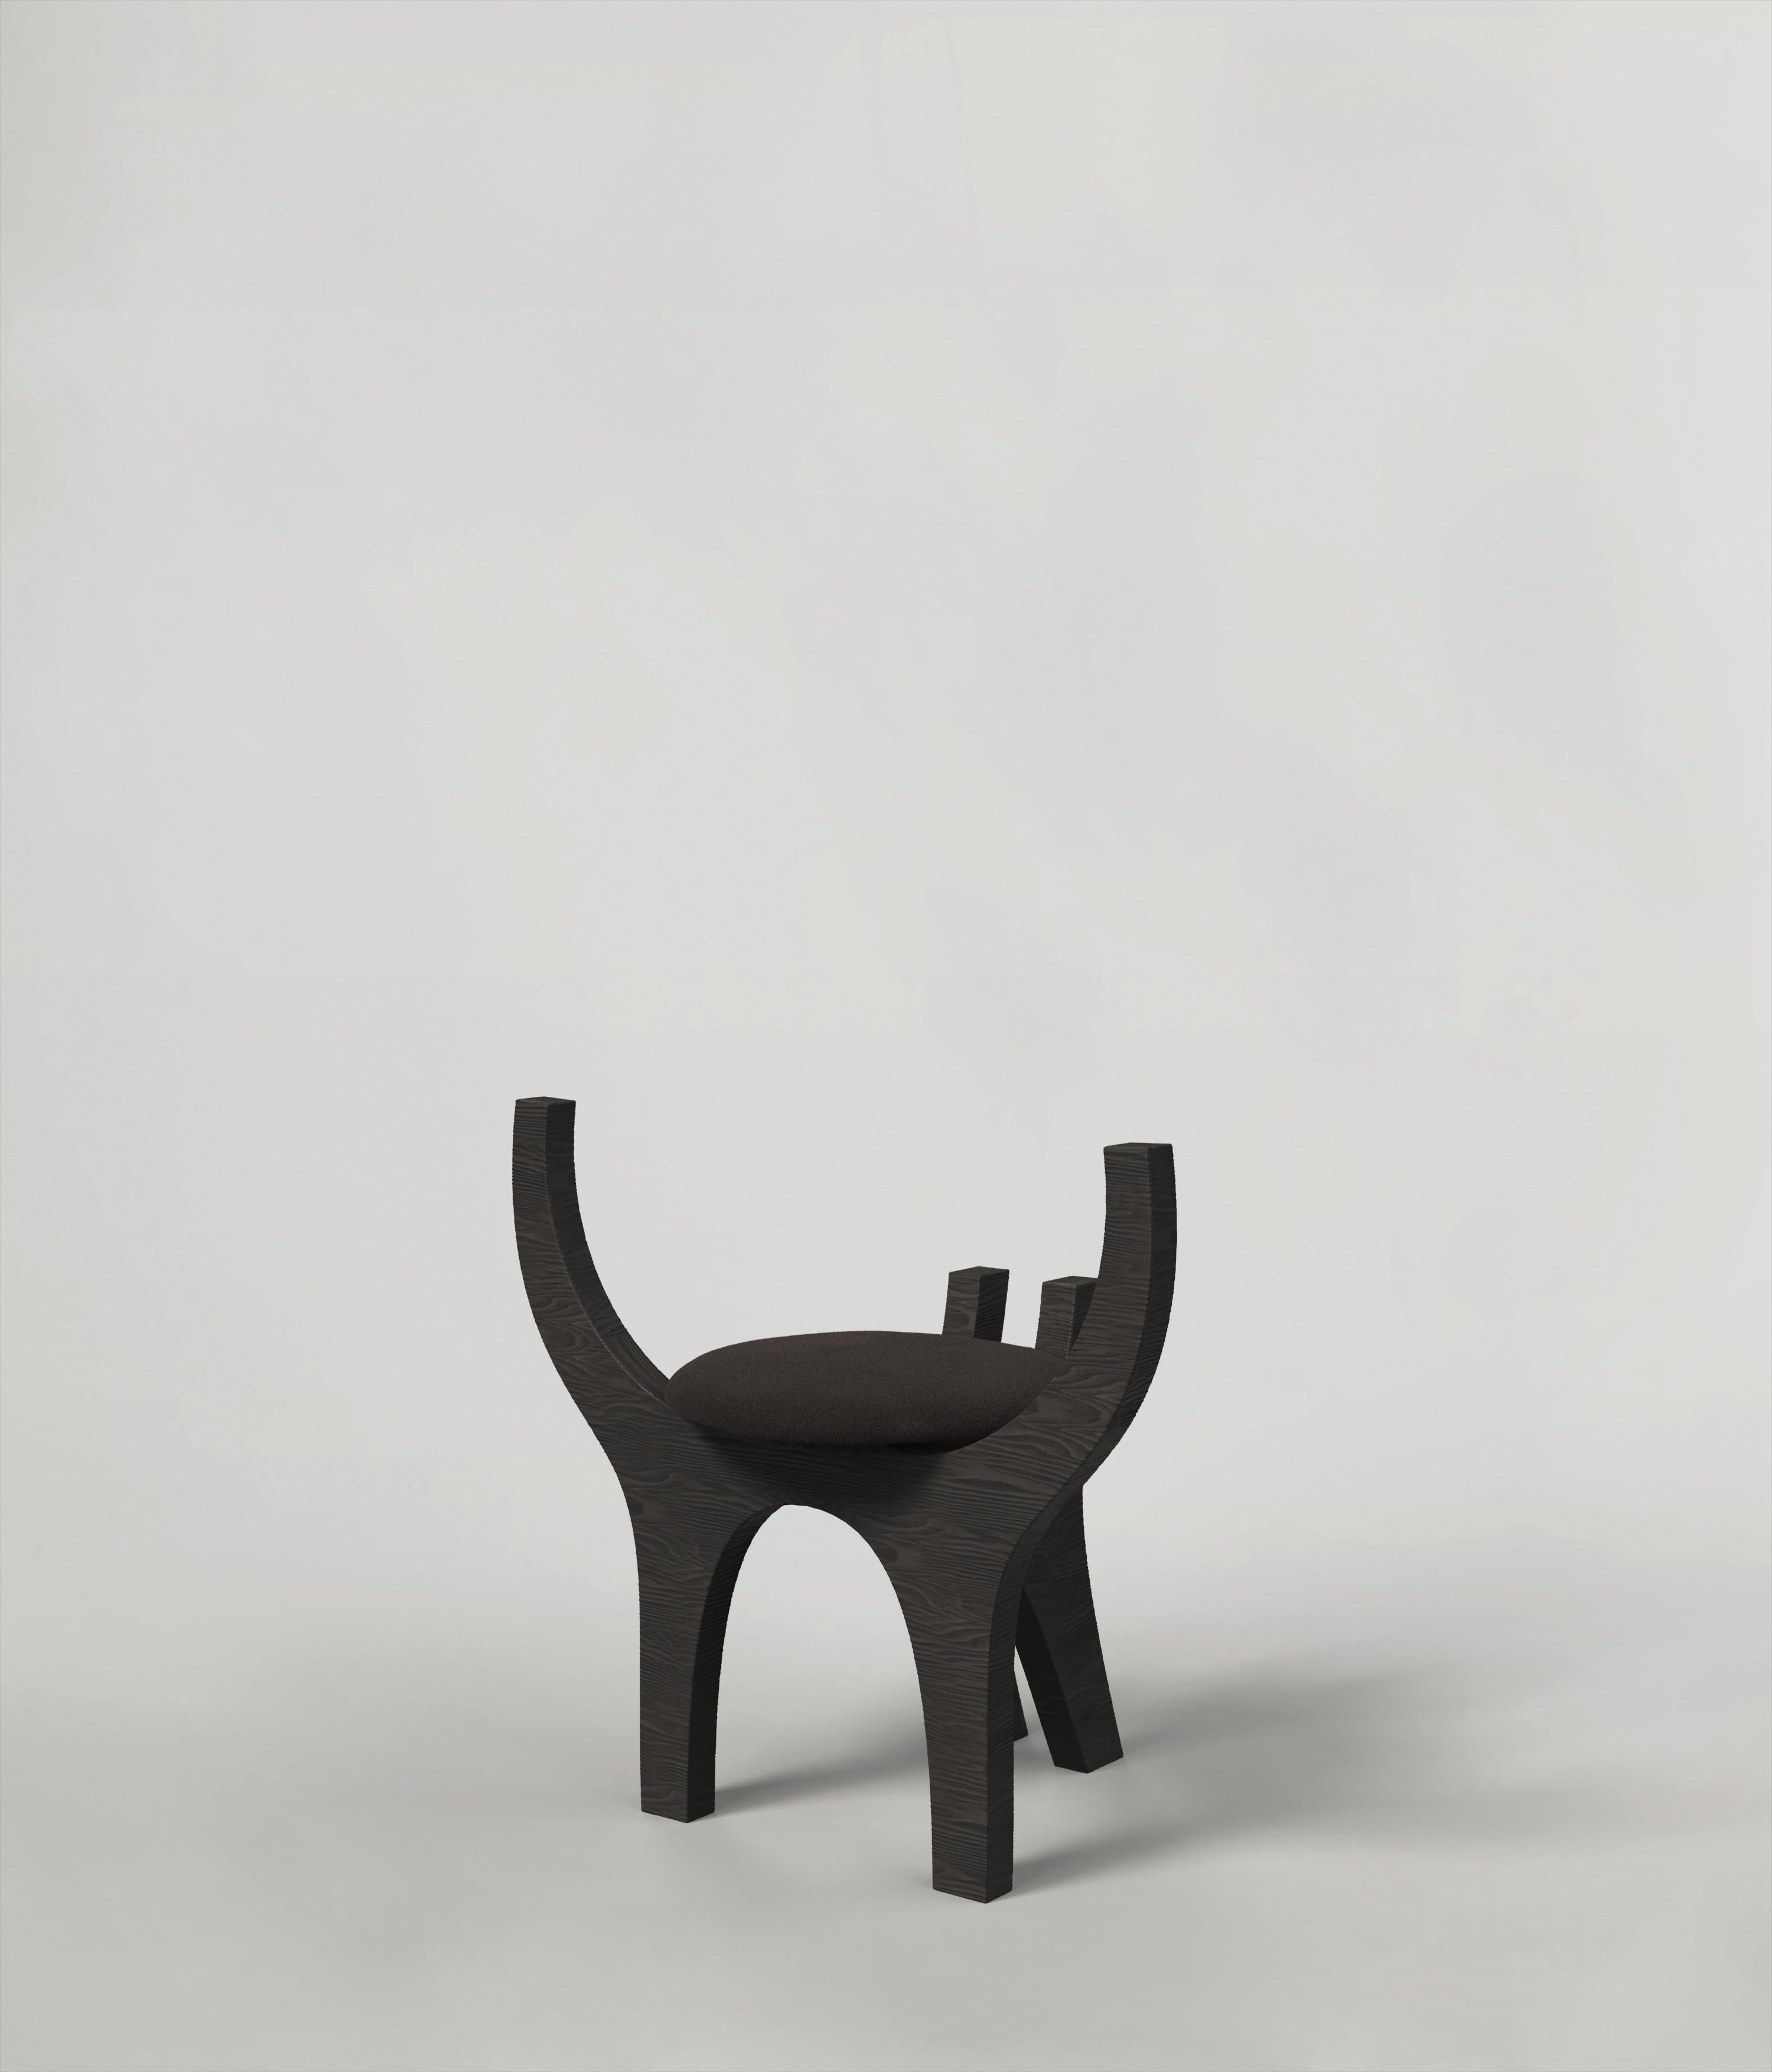 Italian Contemporary Limited Edition Black Wood Stool, Zero V1 by Edizione Limitata For Sale